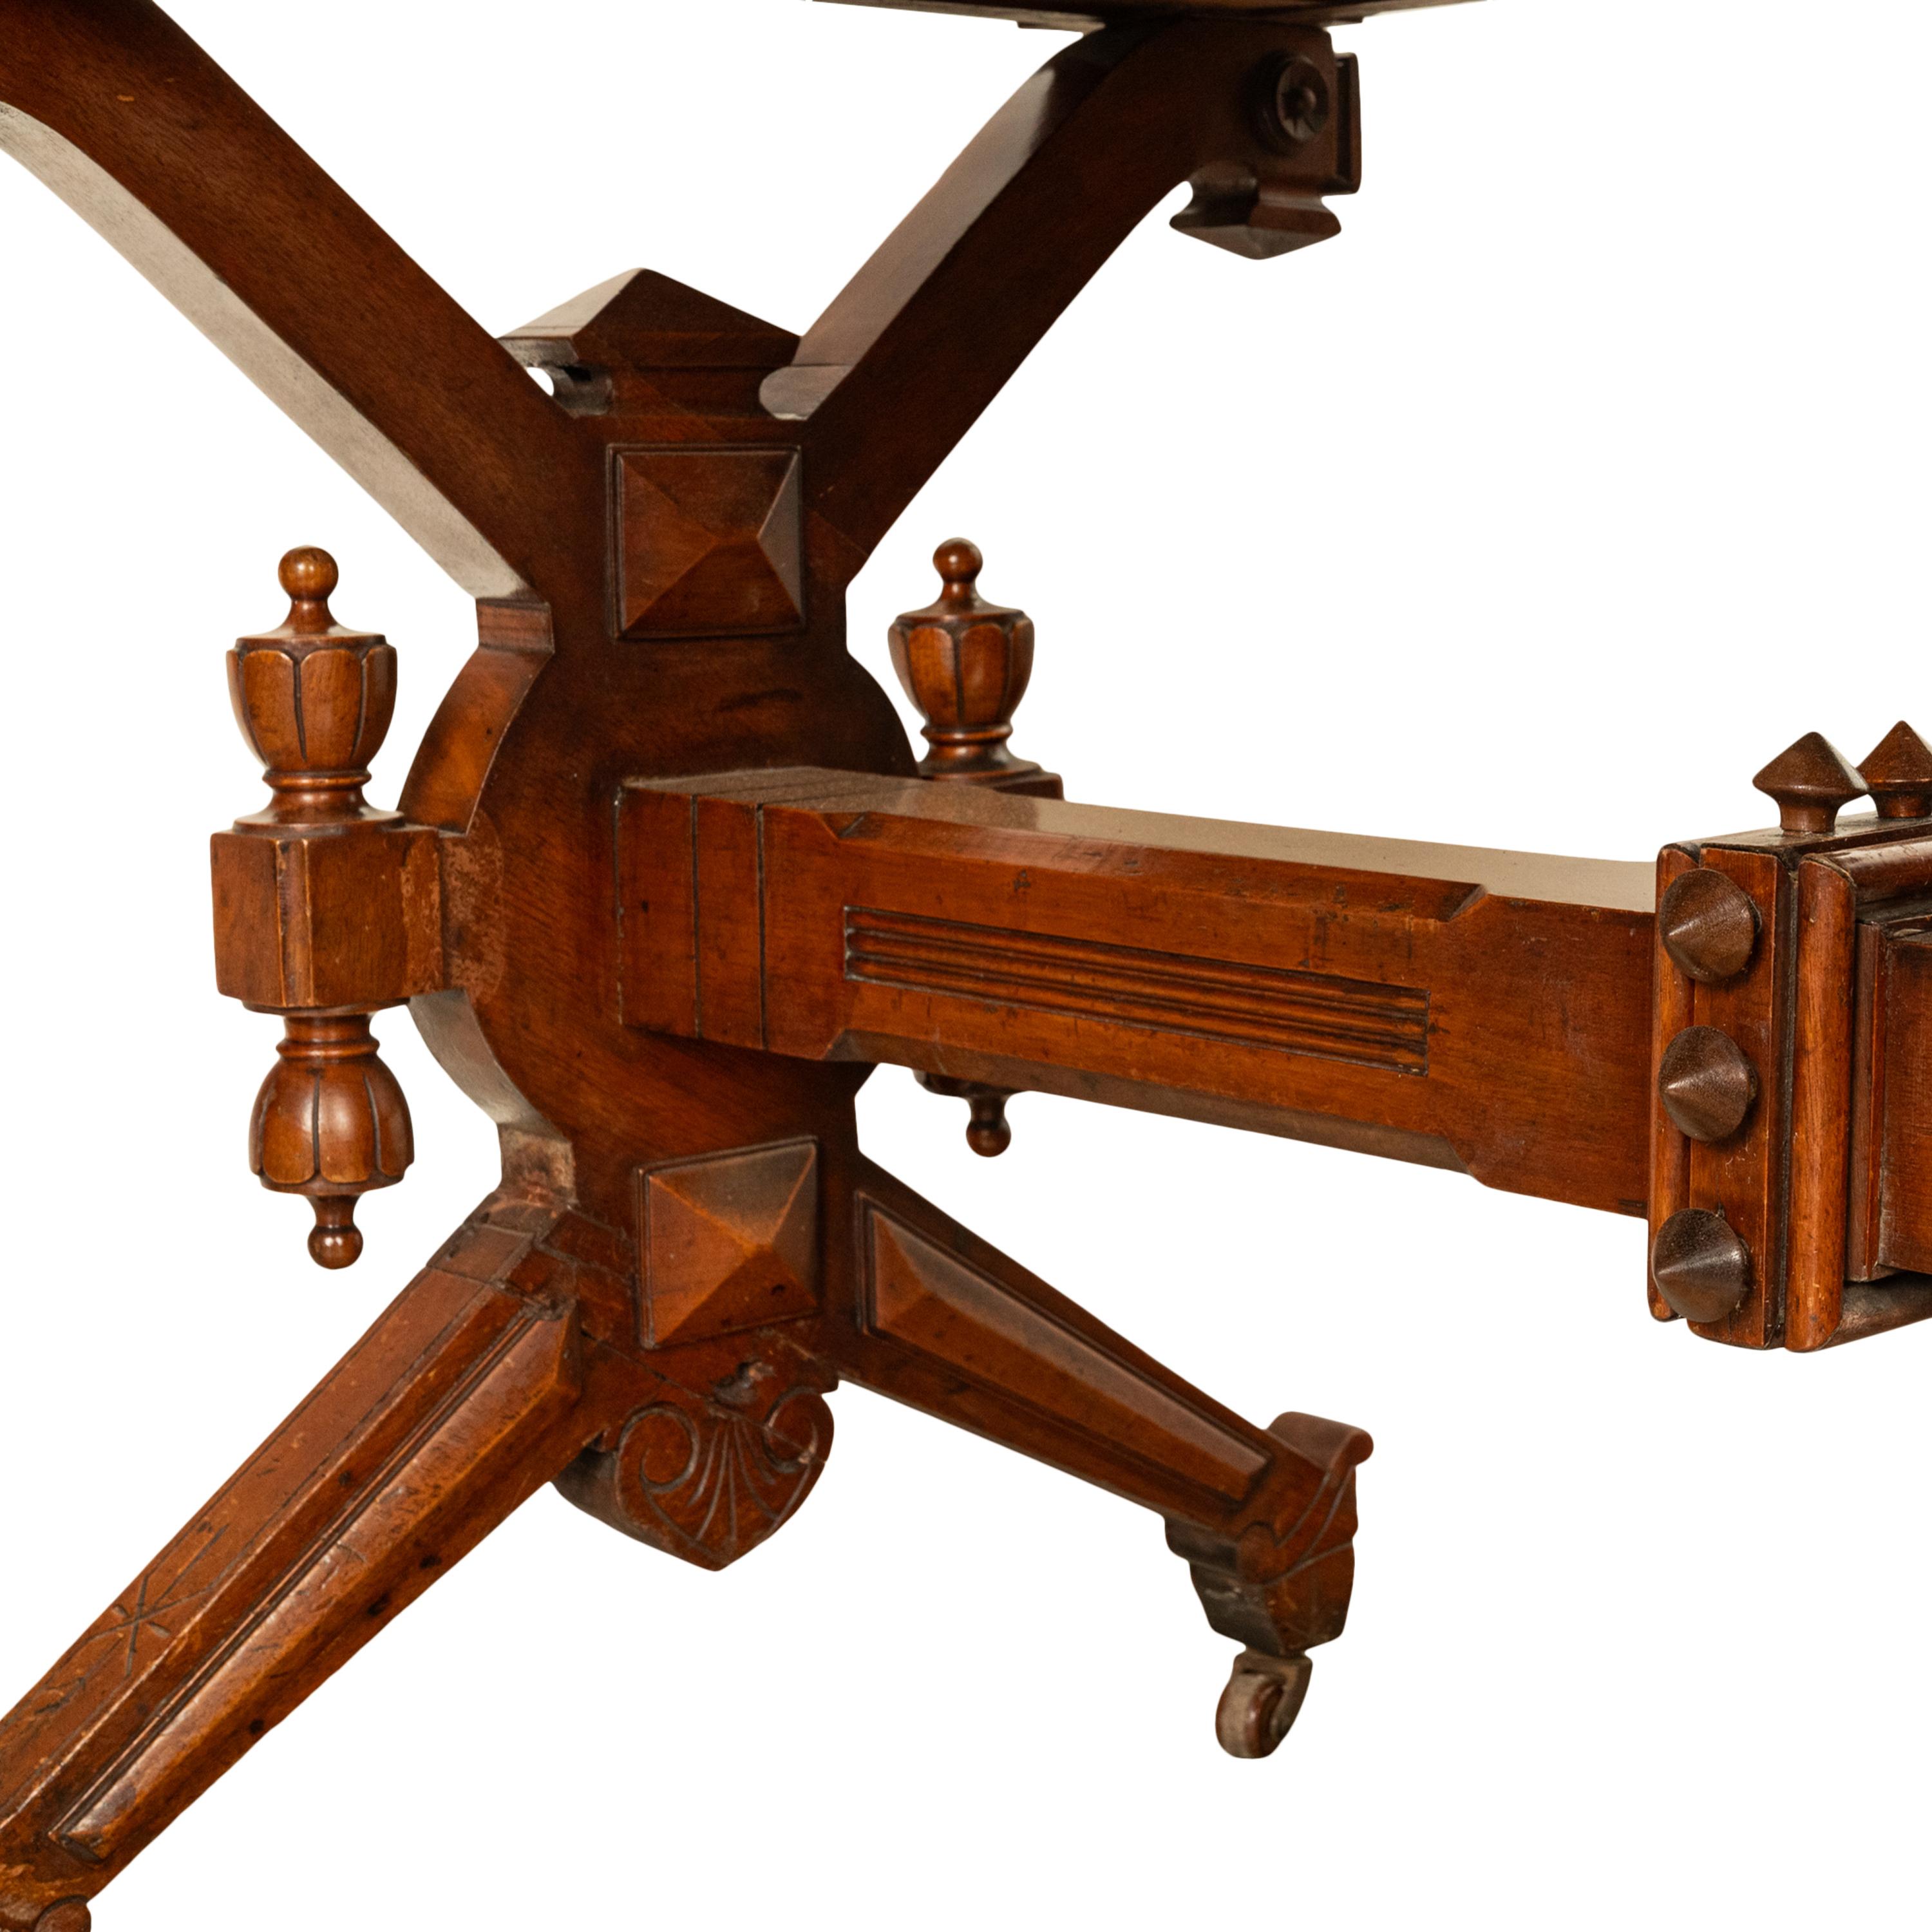 Antique American Walnut Renaissance Revival Aesthetic Movement Desk Table 1875 For Sale 7